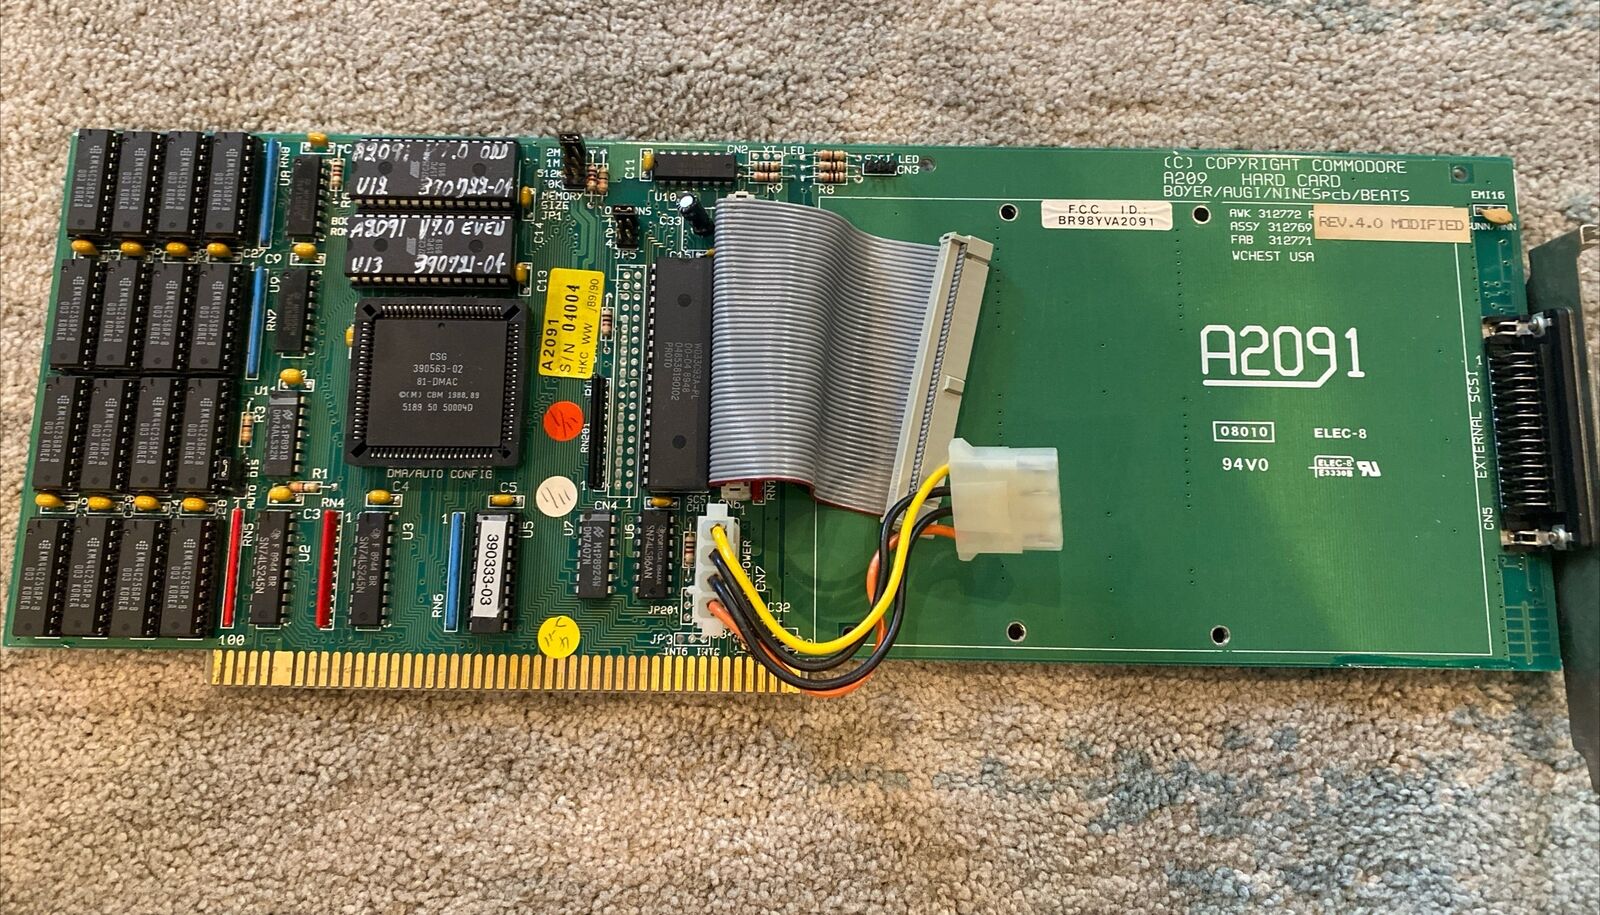 Commodore Amiga A2091 HDD SCSI Controller   A2009 Hard card rev. 4.0 modified